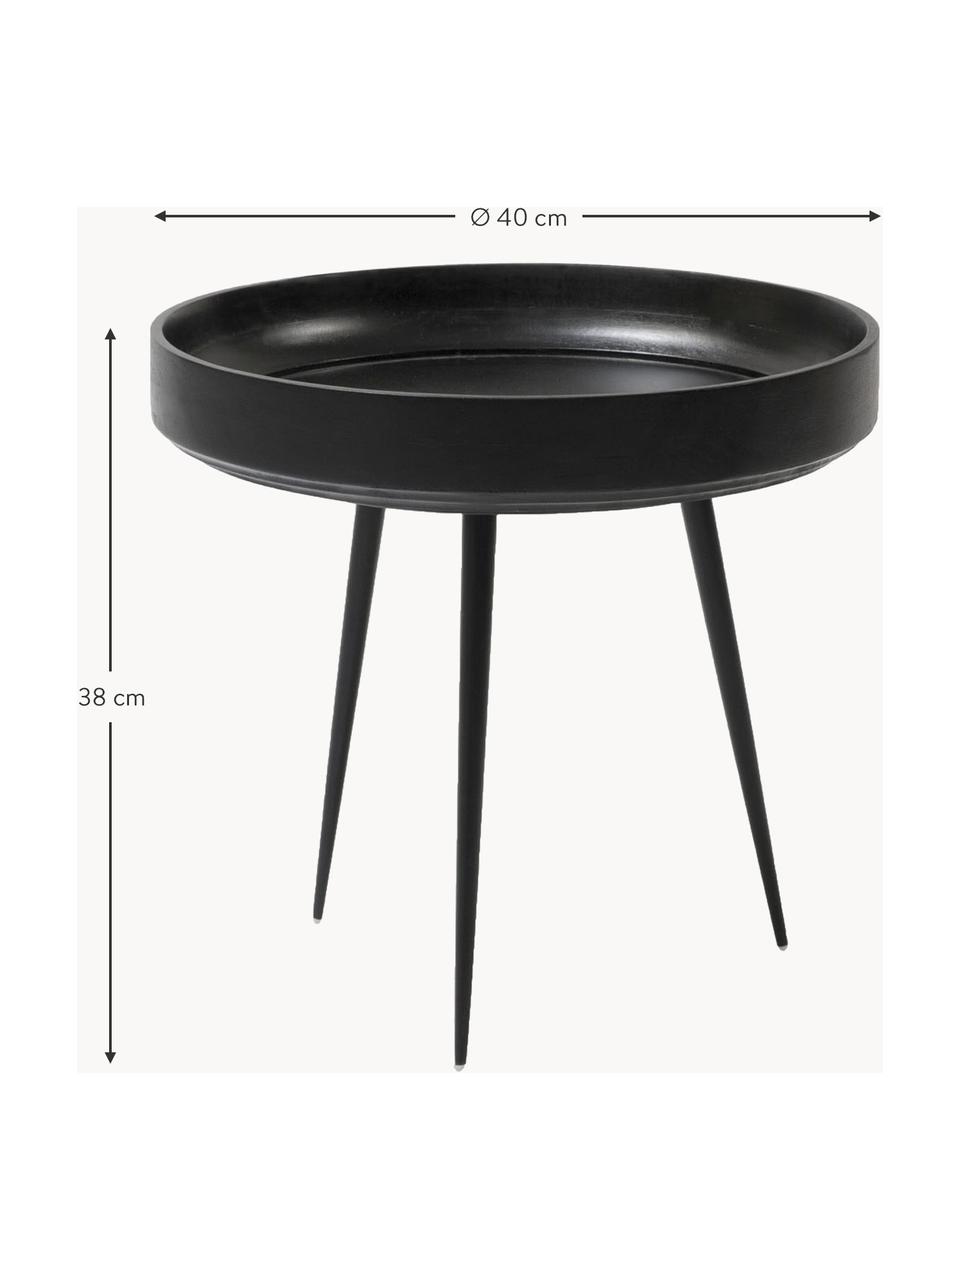 Malý kulatý odkládací stolek z mangového dřeva Bowl, Mangové dřevo, lakované černou barvou, Ø 40 cm, V 38 cm